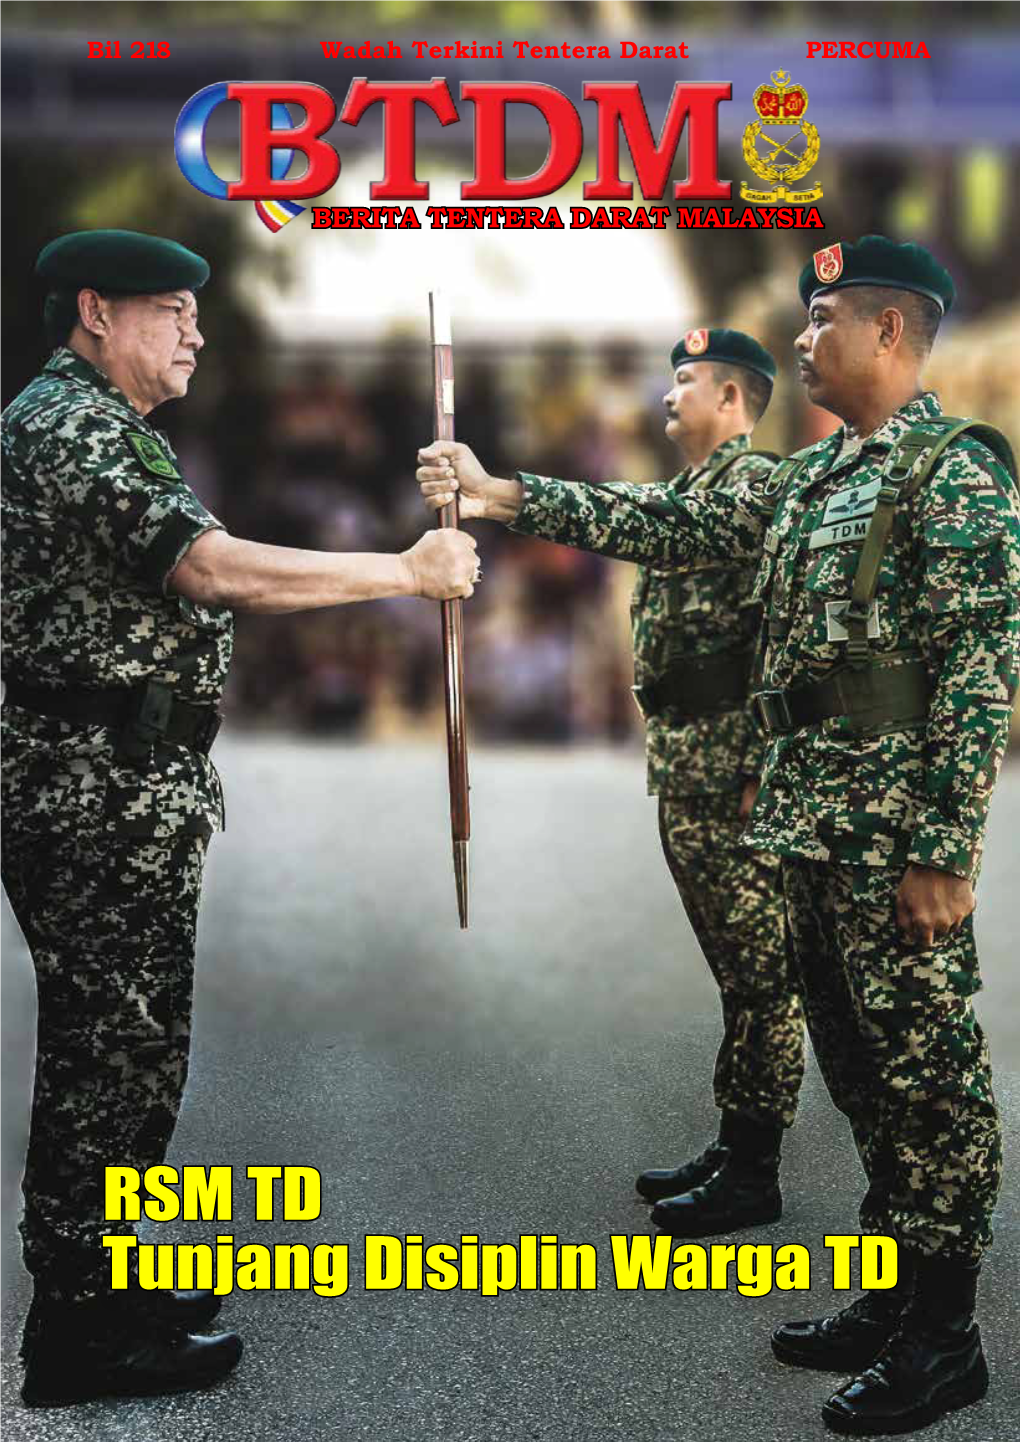 RSM TD Tunjang Disiplin Warga TD